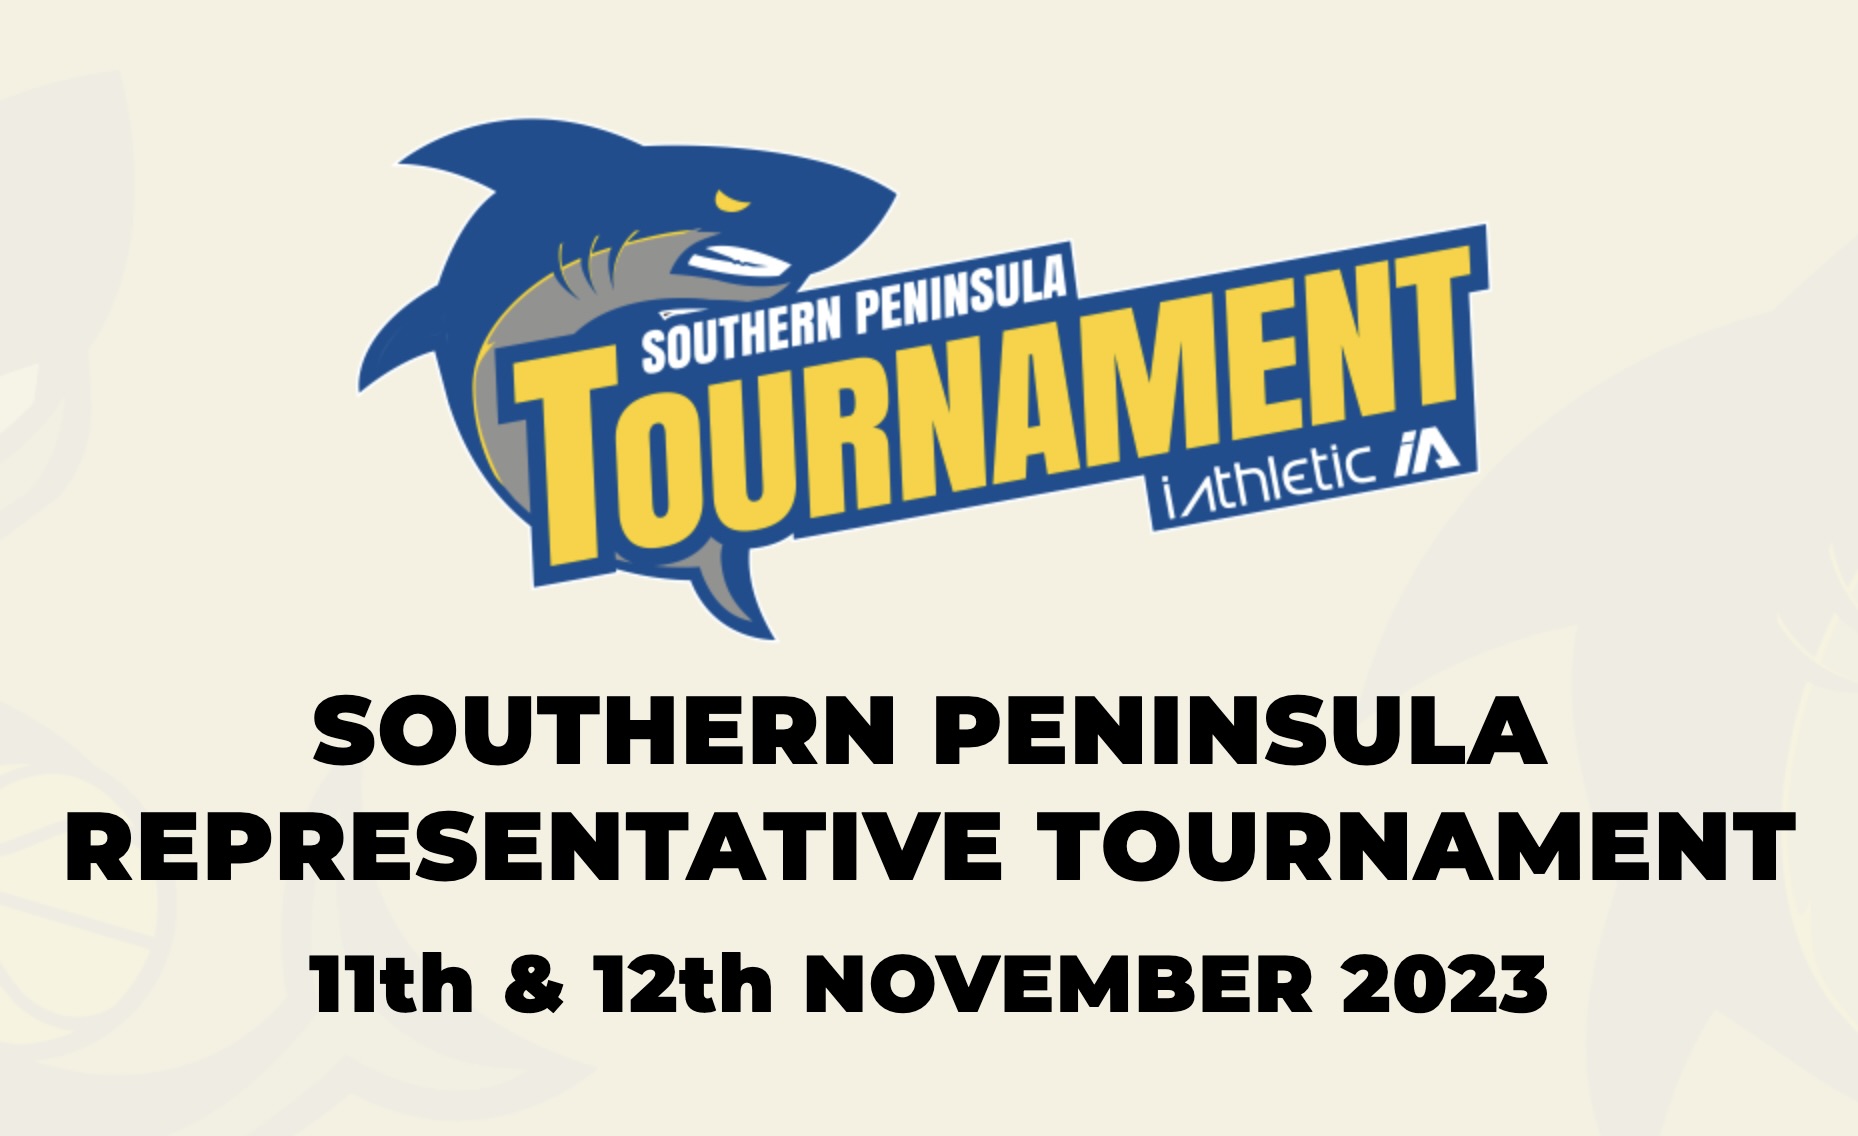 Southern Peninsula Tournament